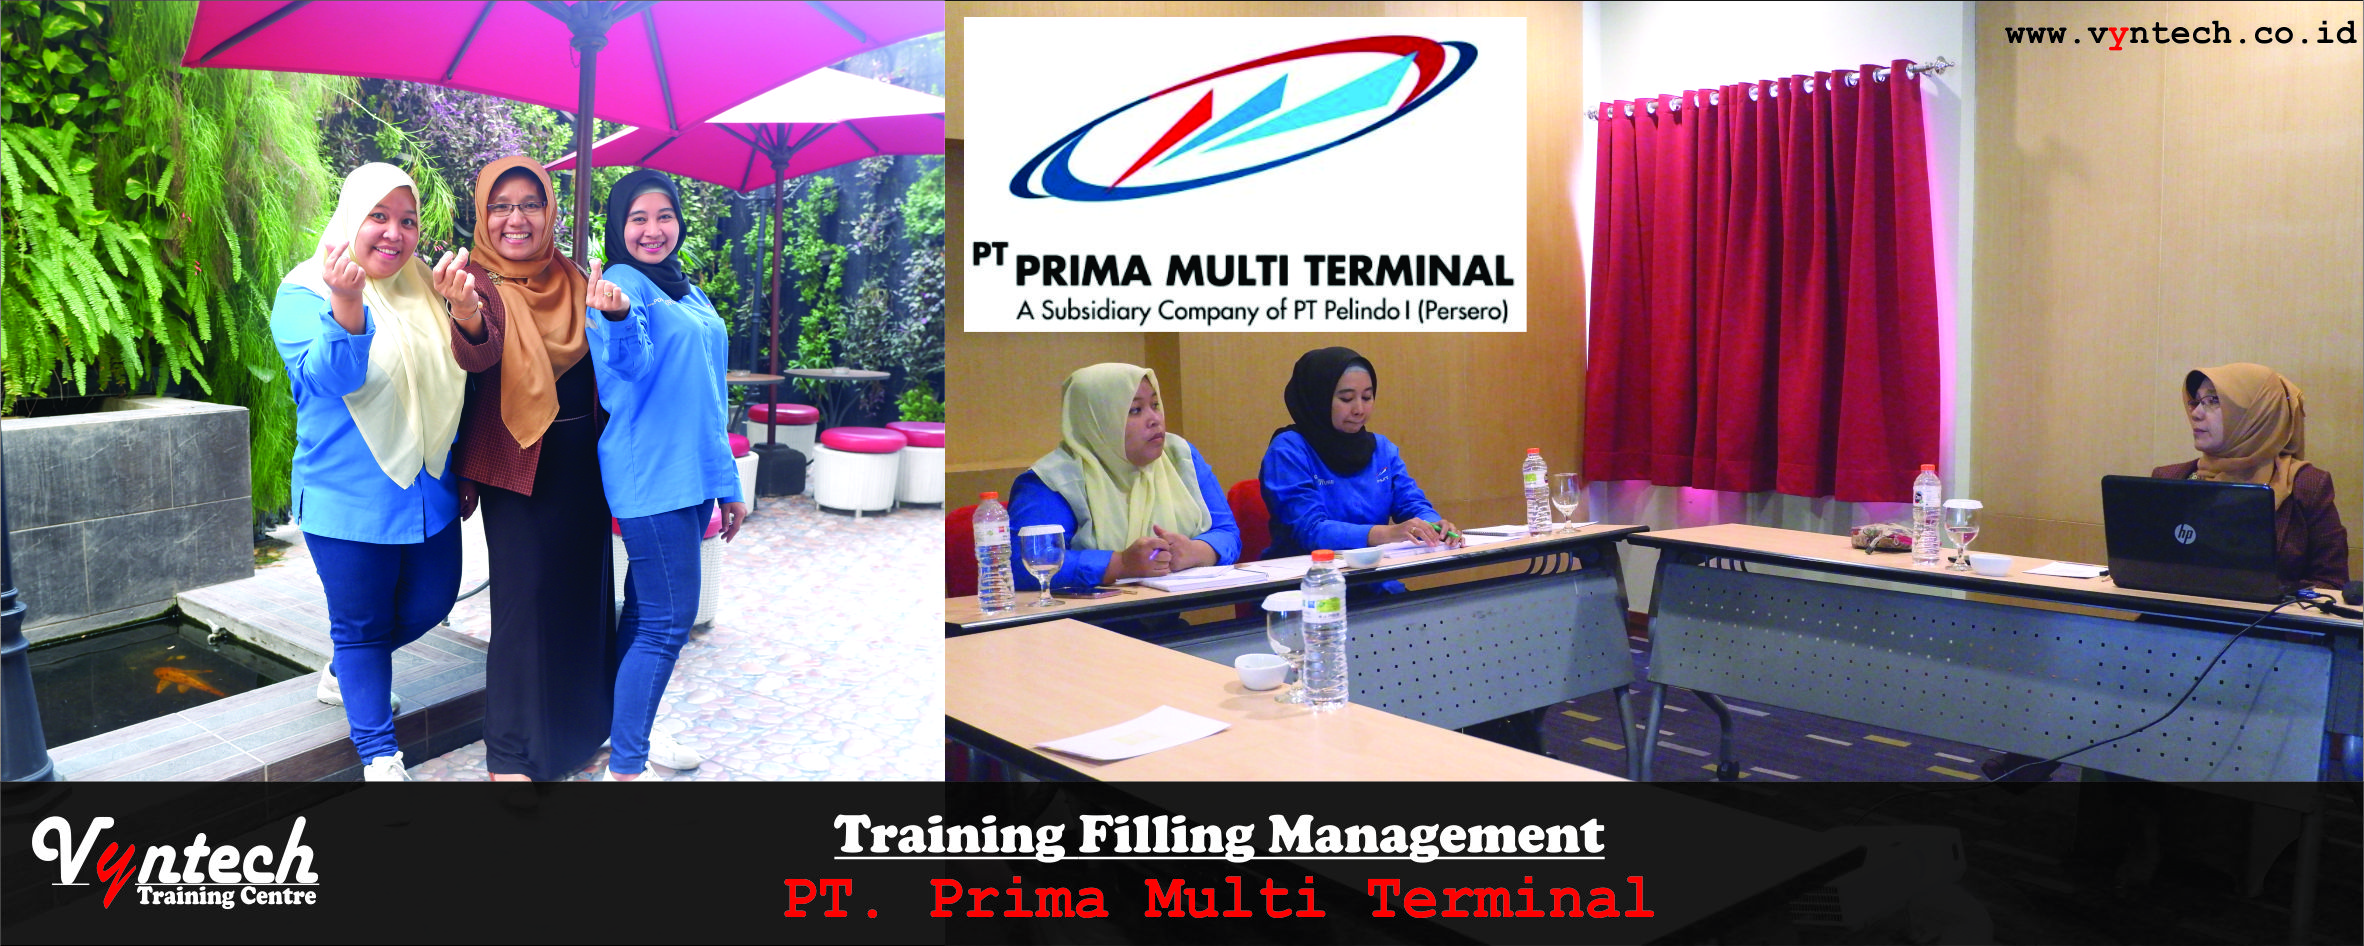 20191204 Training Filling Management - PT Prima Multi Terminal